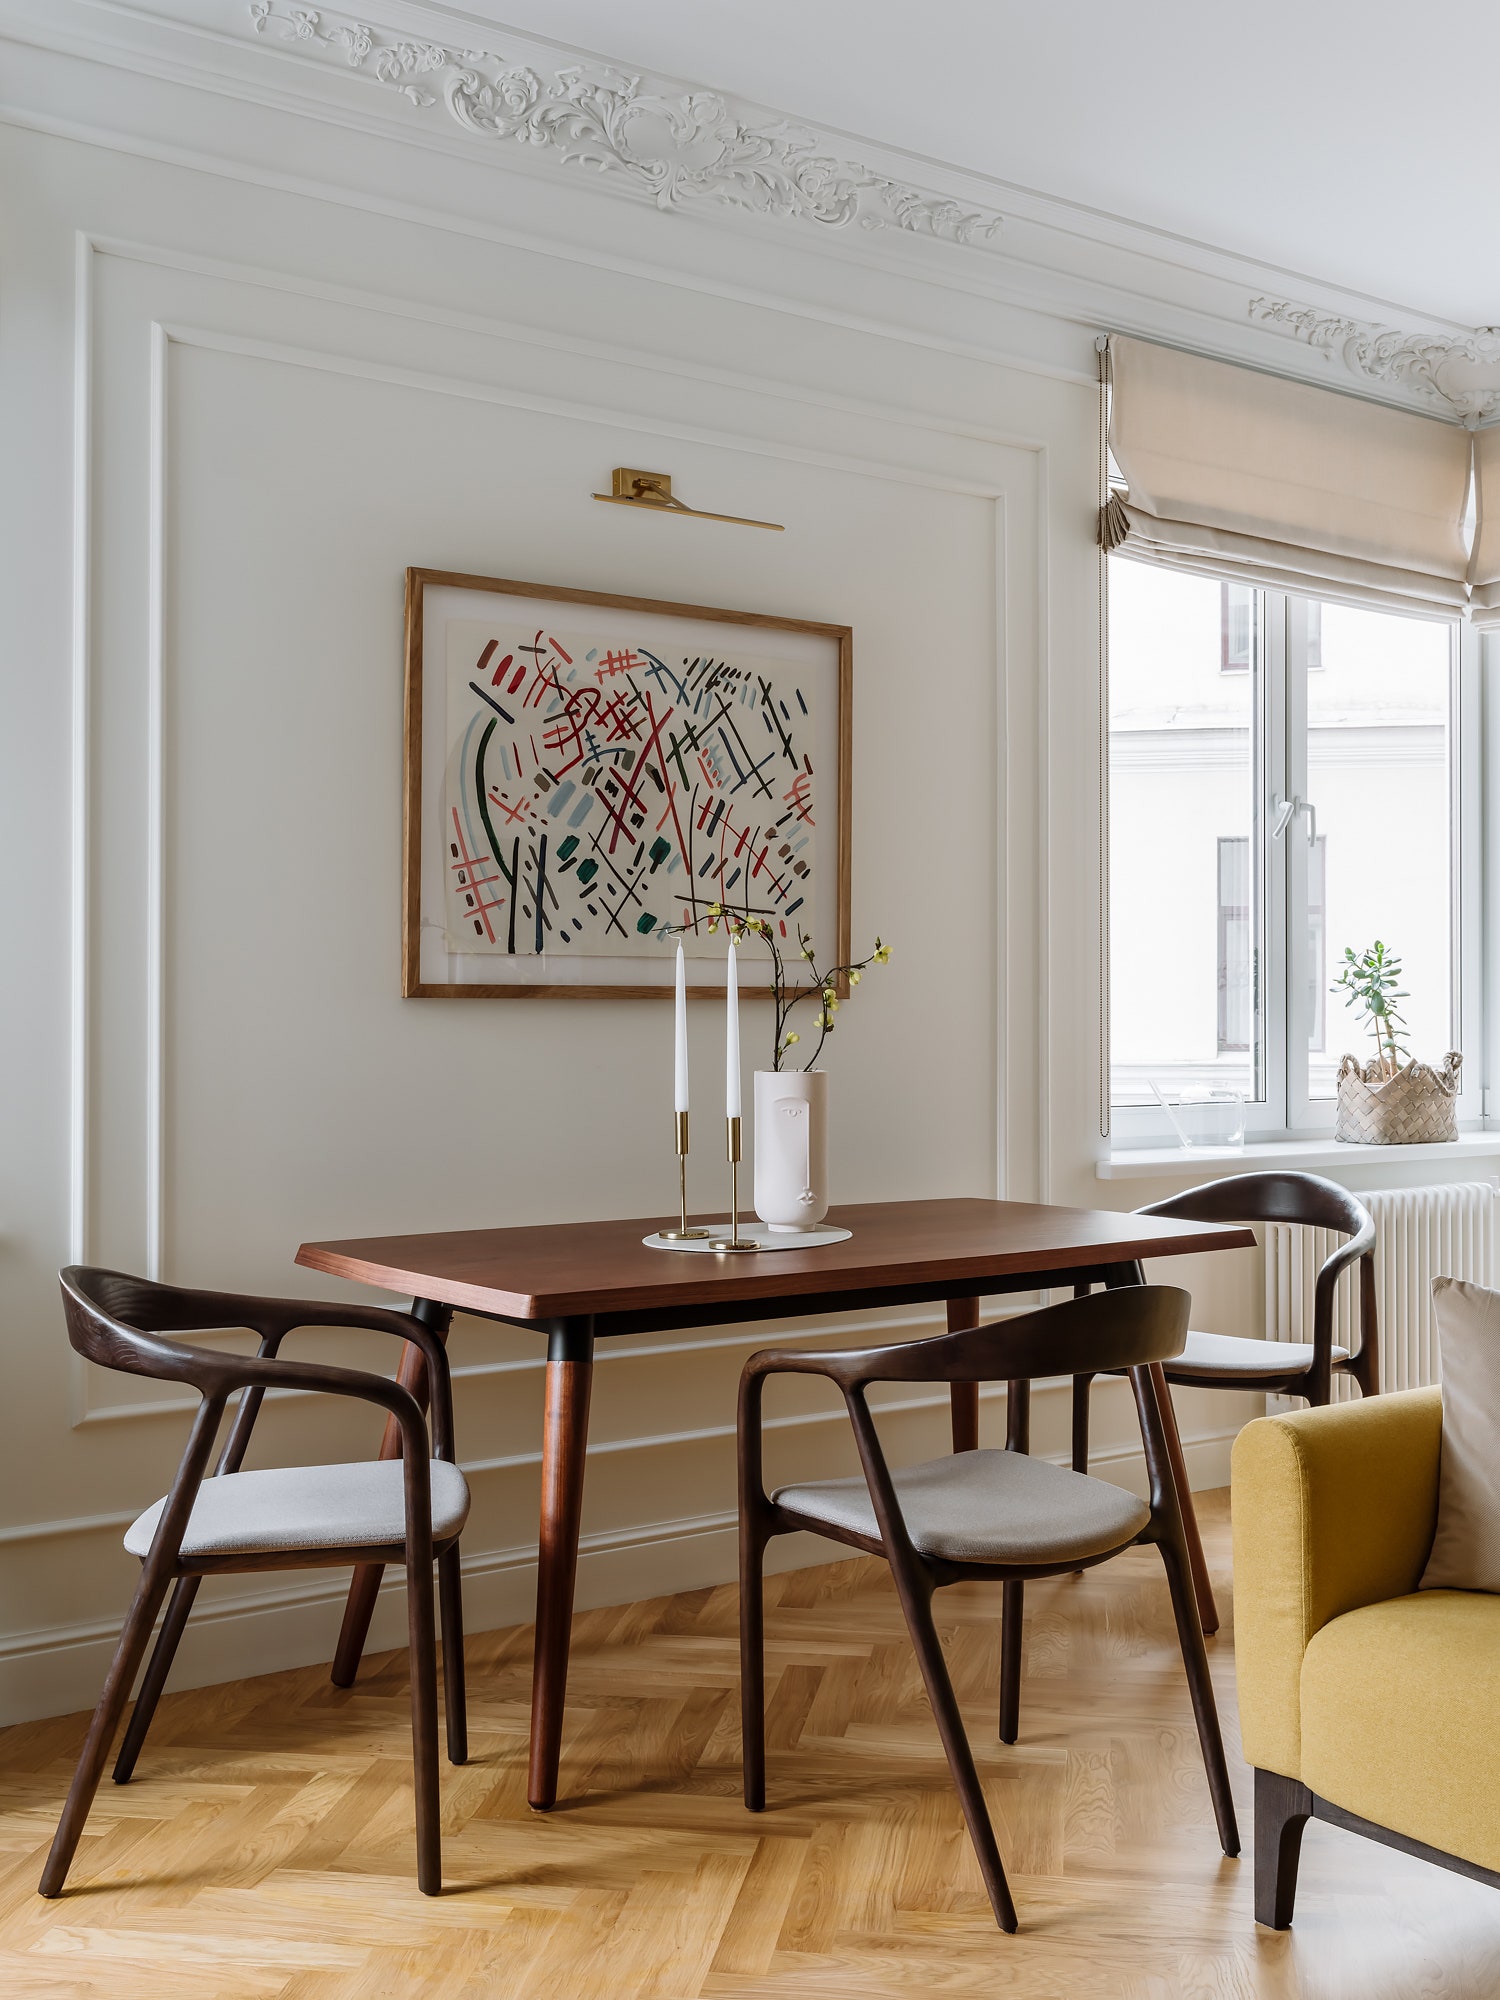 Фрагмент гостиной. Стол и стулья Cosmorelax шторы  галерея “Артик” на стене работа Юрия Злотникова.